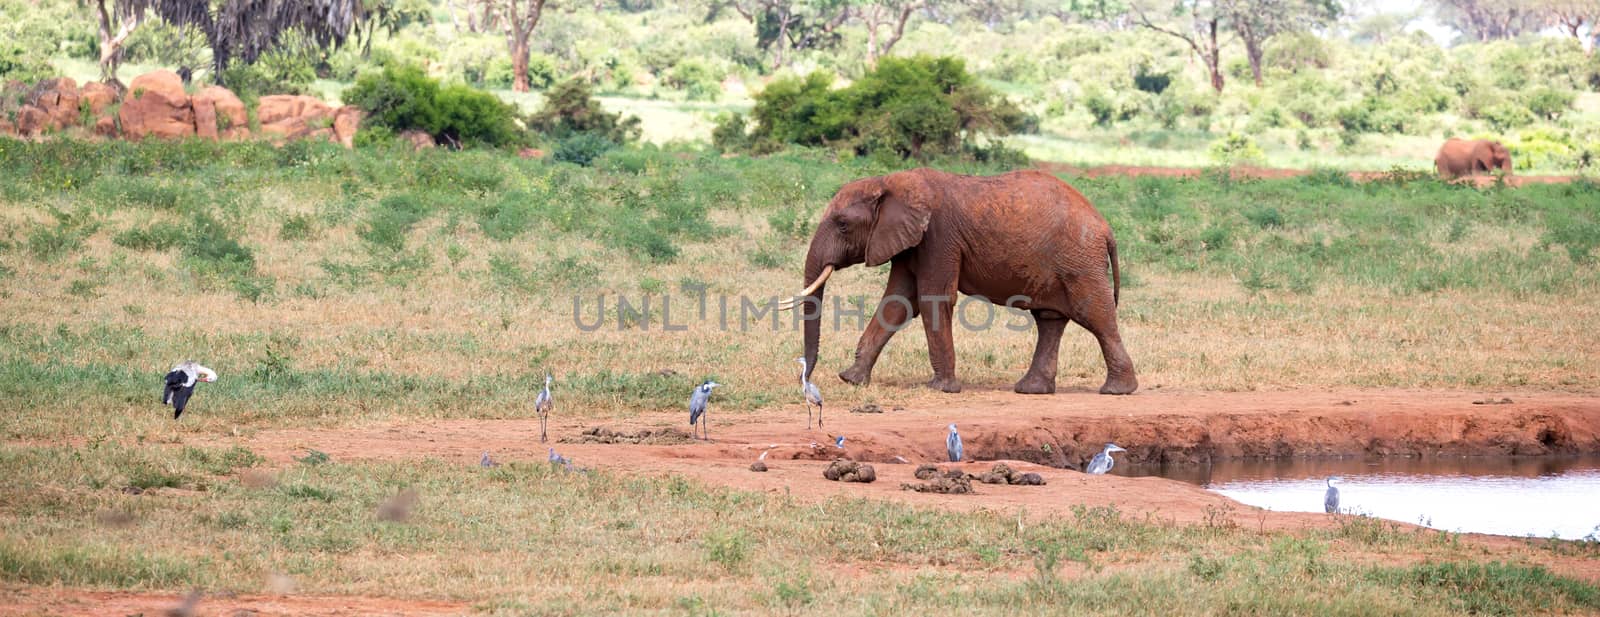 Elephant on the waterhole in the savannah of Kenya